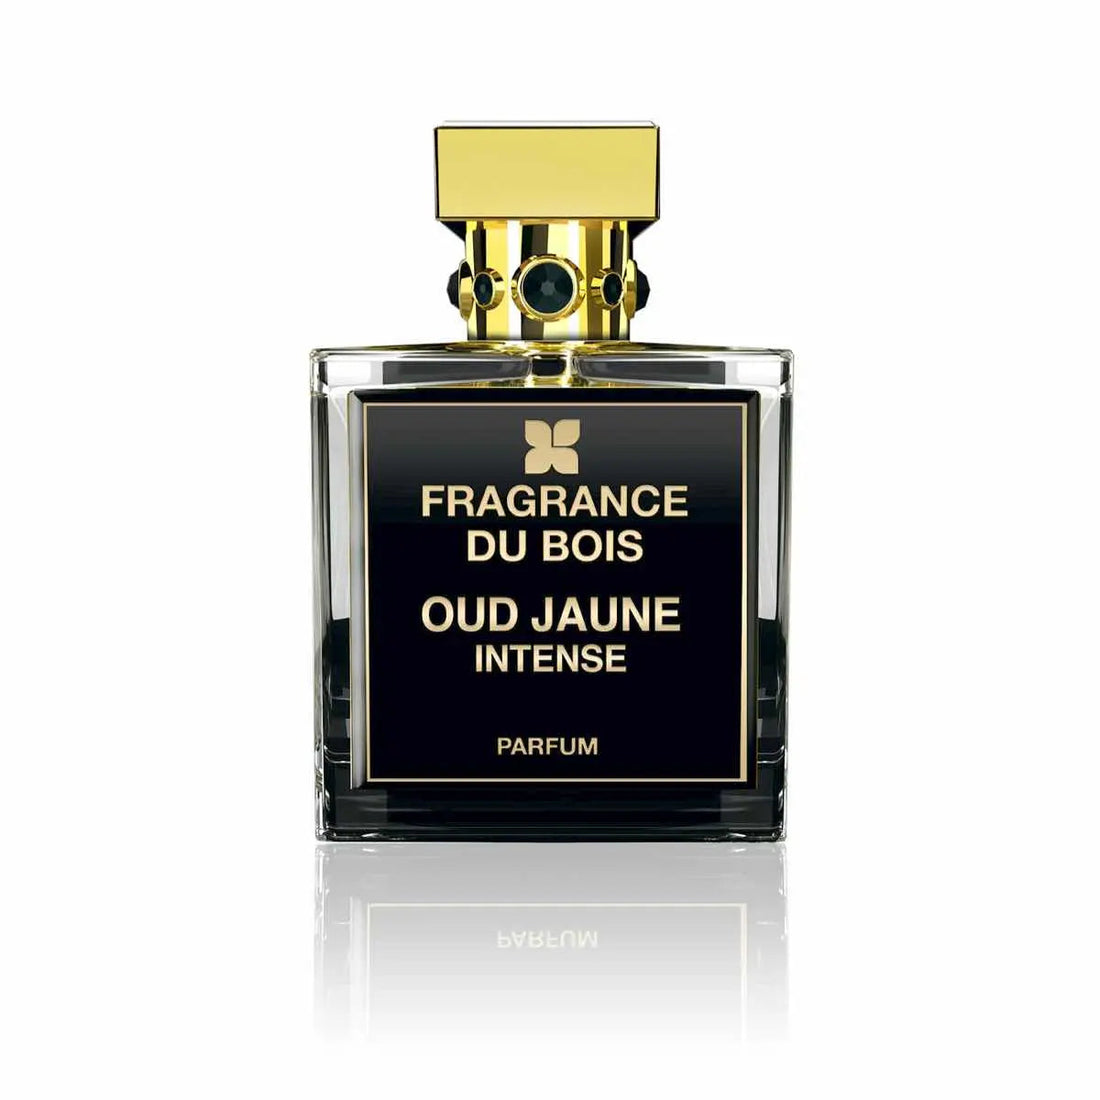 Fragrance du bois Oud Jaune 浓烈香水 - 50 毫升